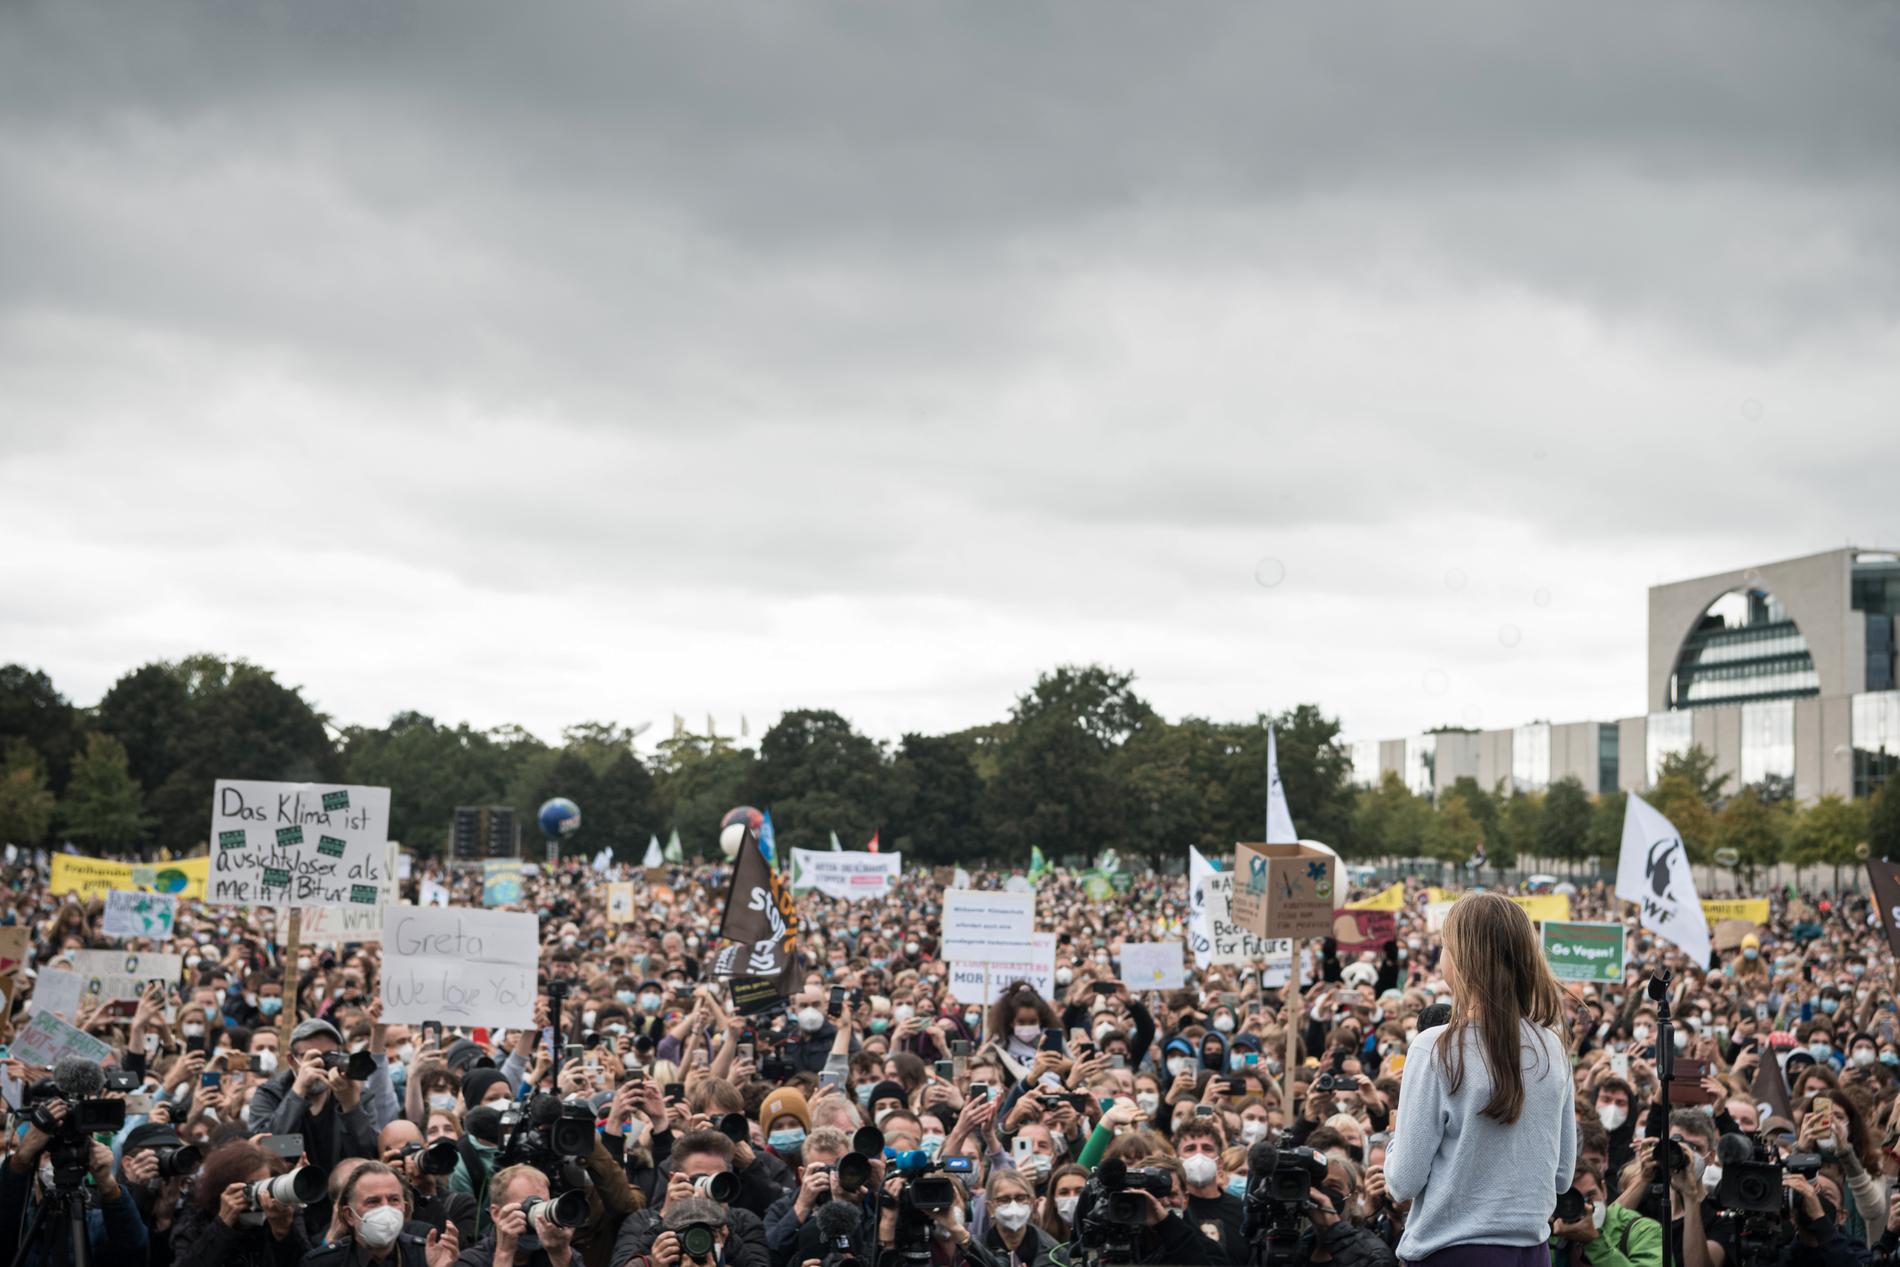  Från scenen med över 50 000 människor framför sig gör Greta Thunberg ett sista minuten inlägg i den tyska valrörelsen. ”Gå och rösta”, ropar hon till folkhavet. ”Men det räcker inte. Ni måste gå ut på gatorna också och kräva förändring.”